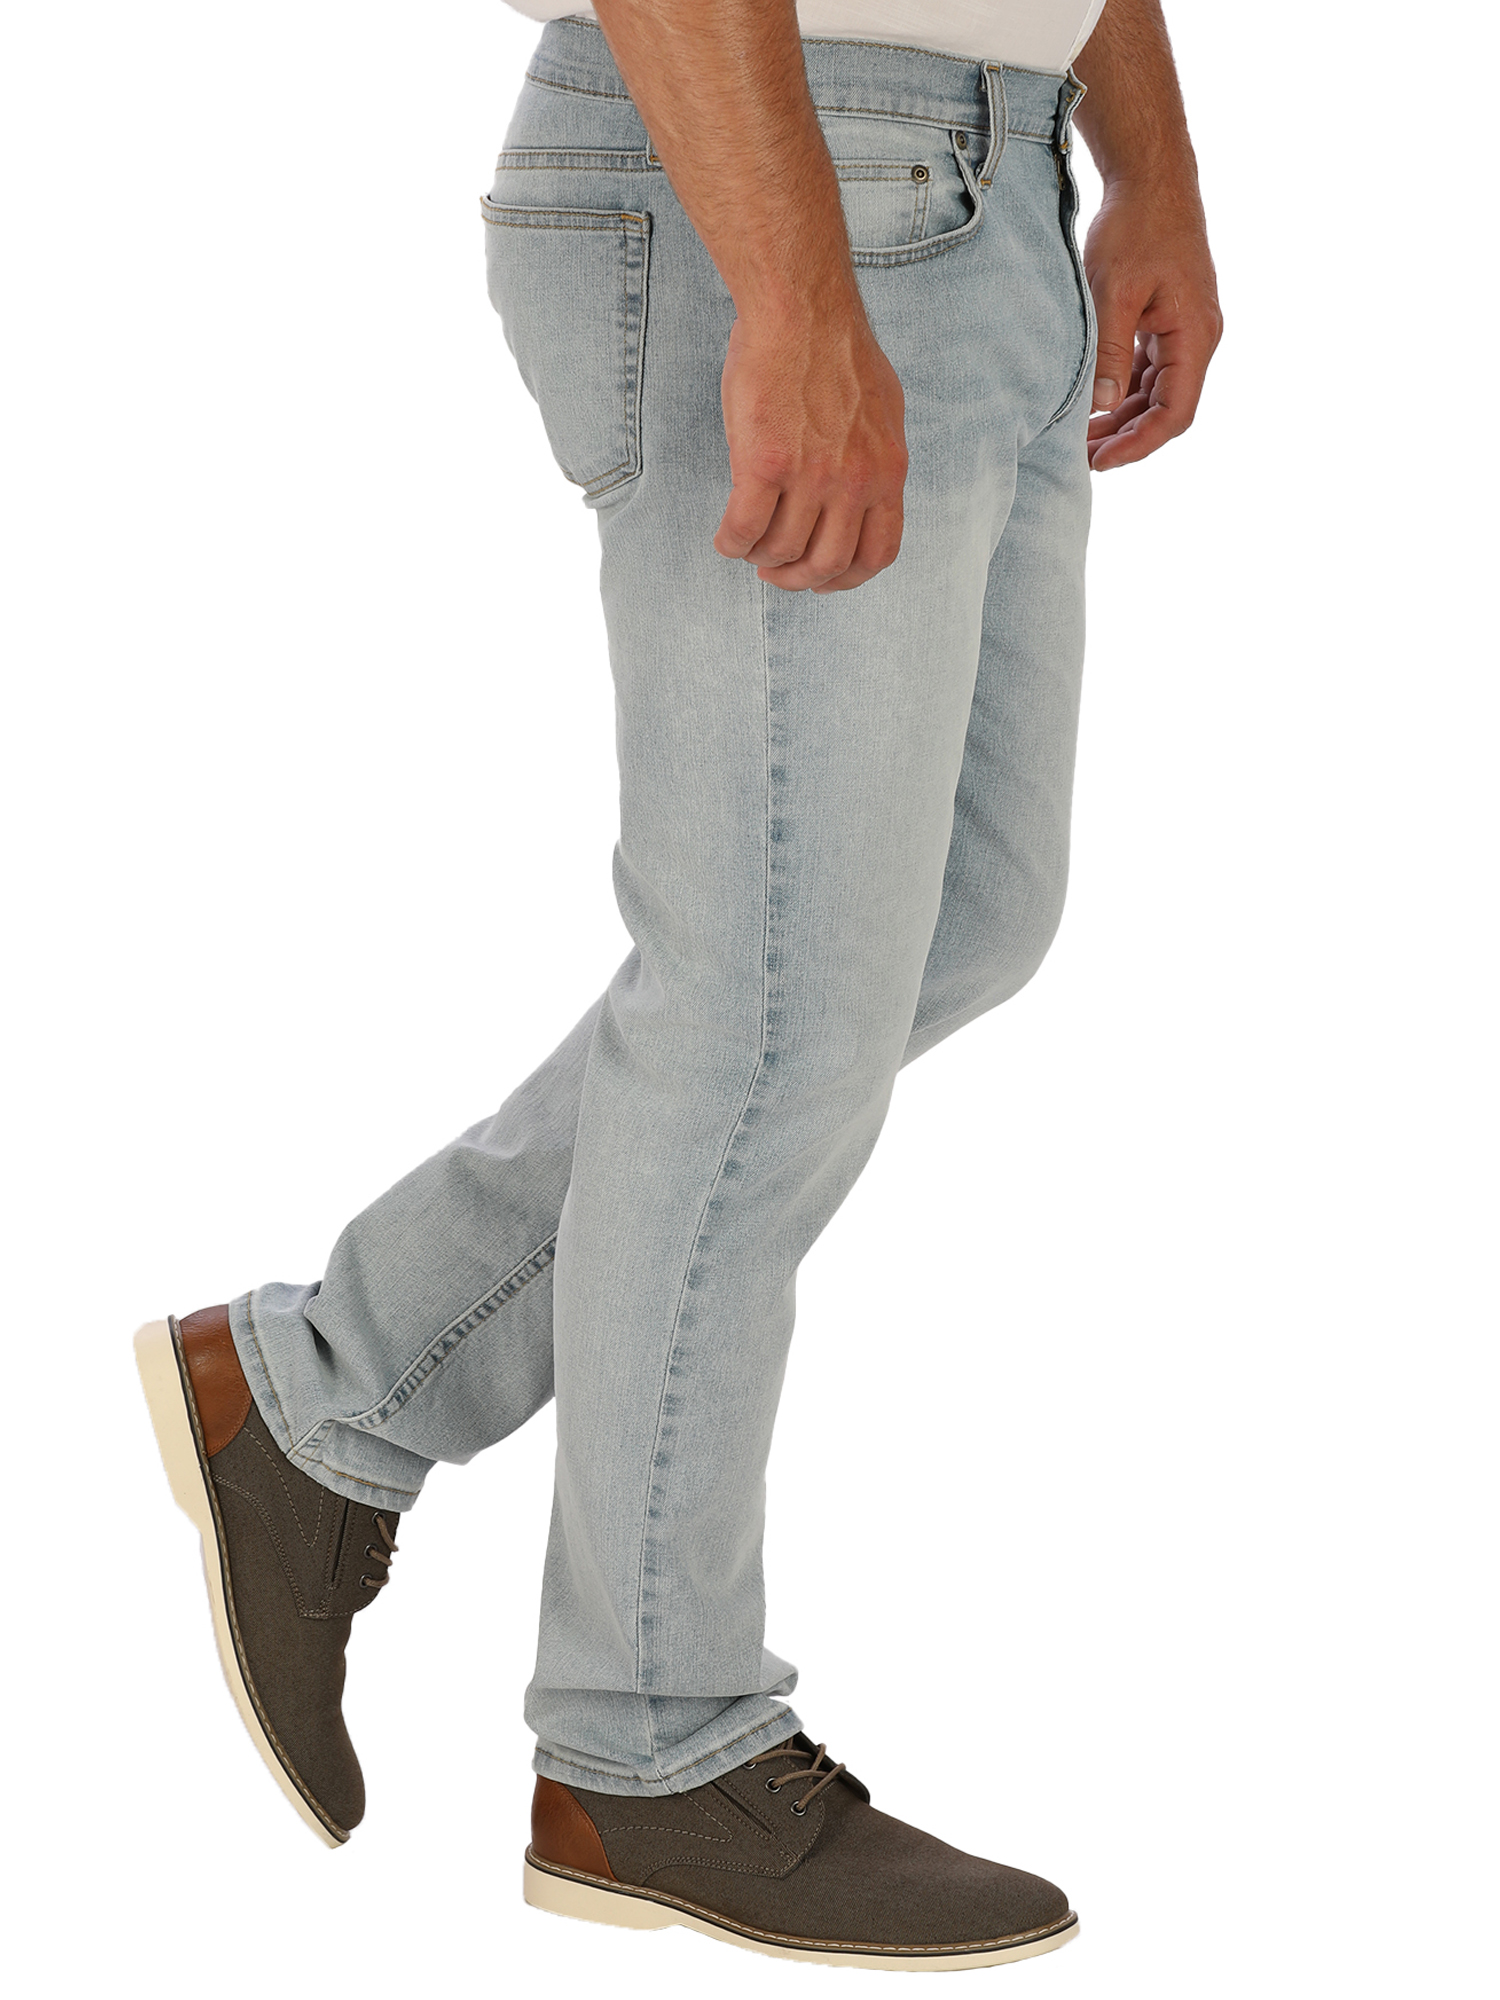 George Men's Slim Fit Jeans - image 2 of 6